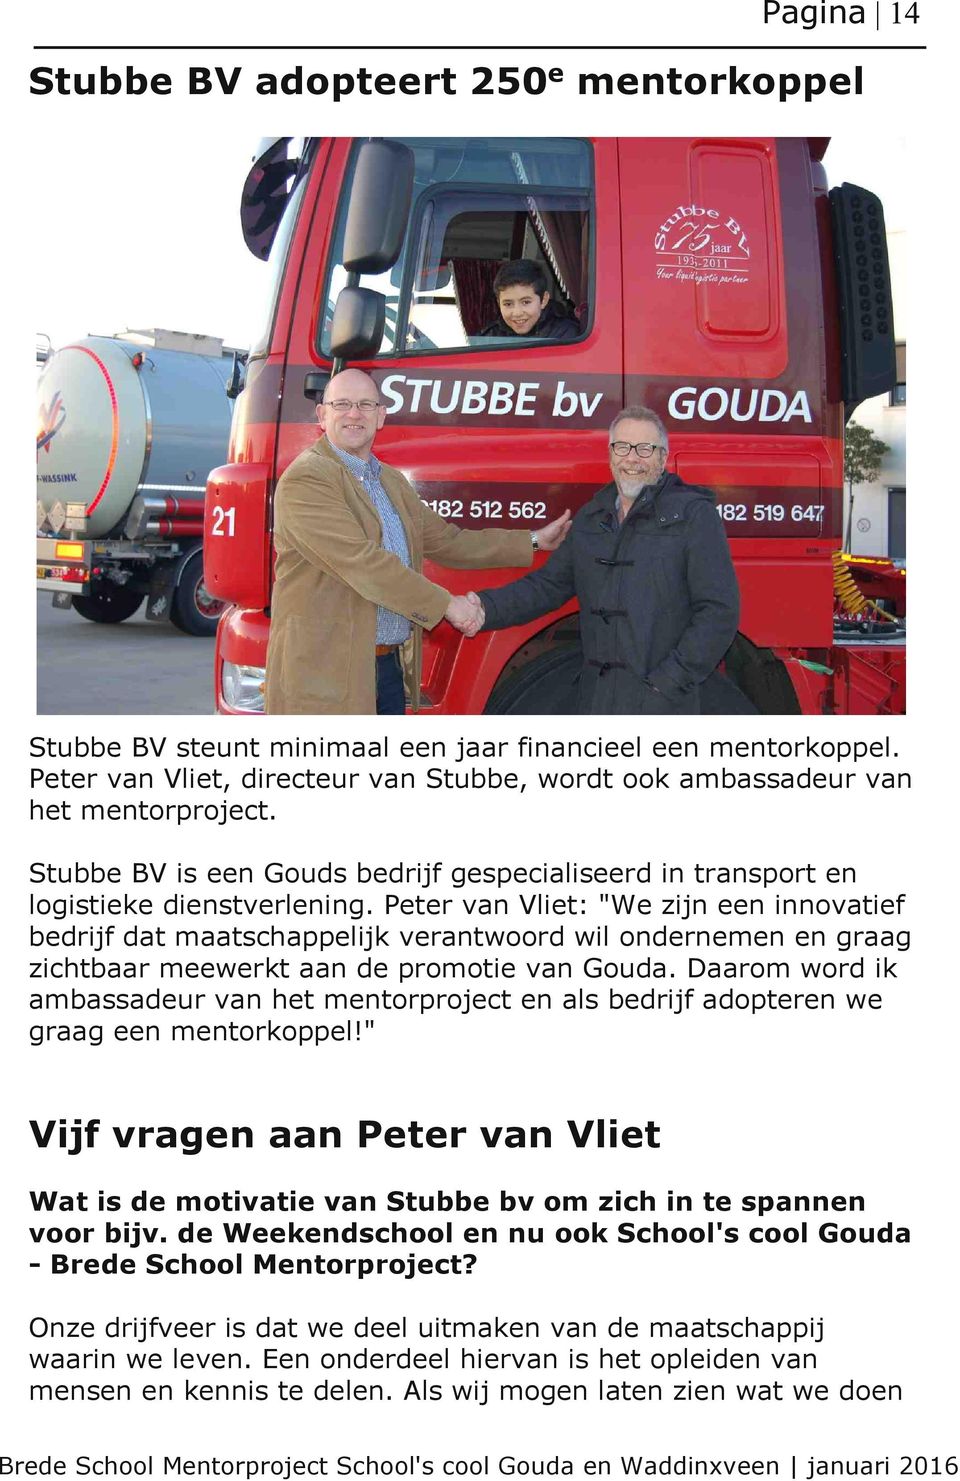 Peter van Vliet: "We zijn een innovatief bedrijf dat maatschappelijk verantwoord wil ondernemen en graag zichtbaar meewerkt aan de promotie van Gouda.